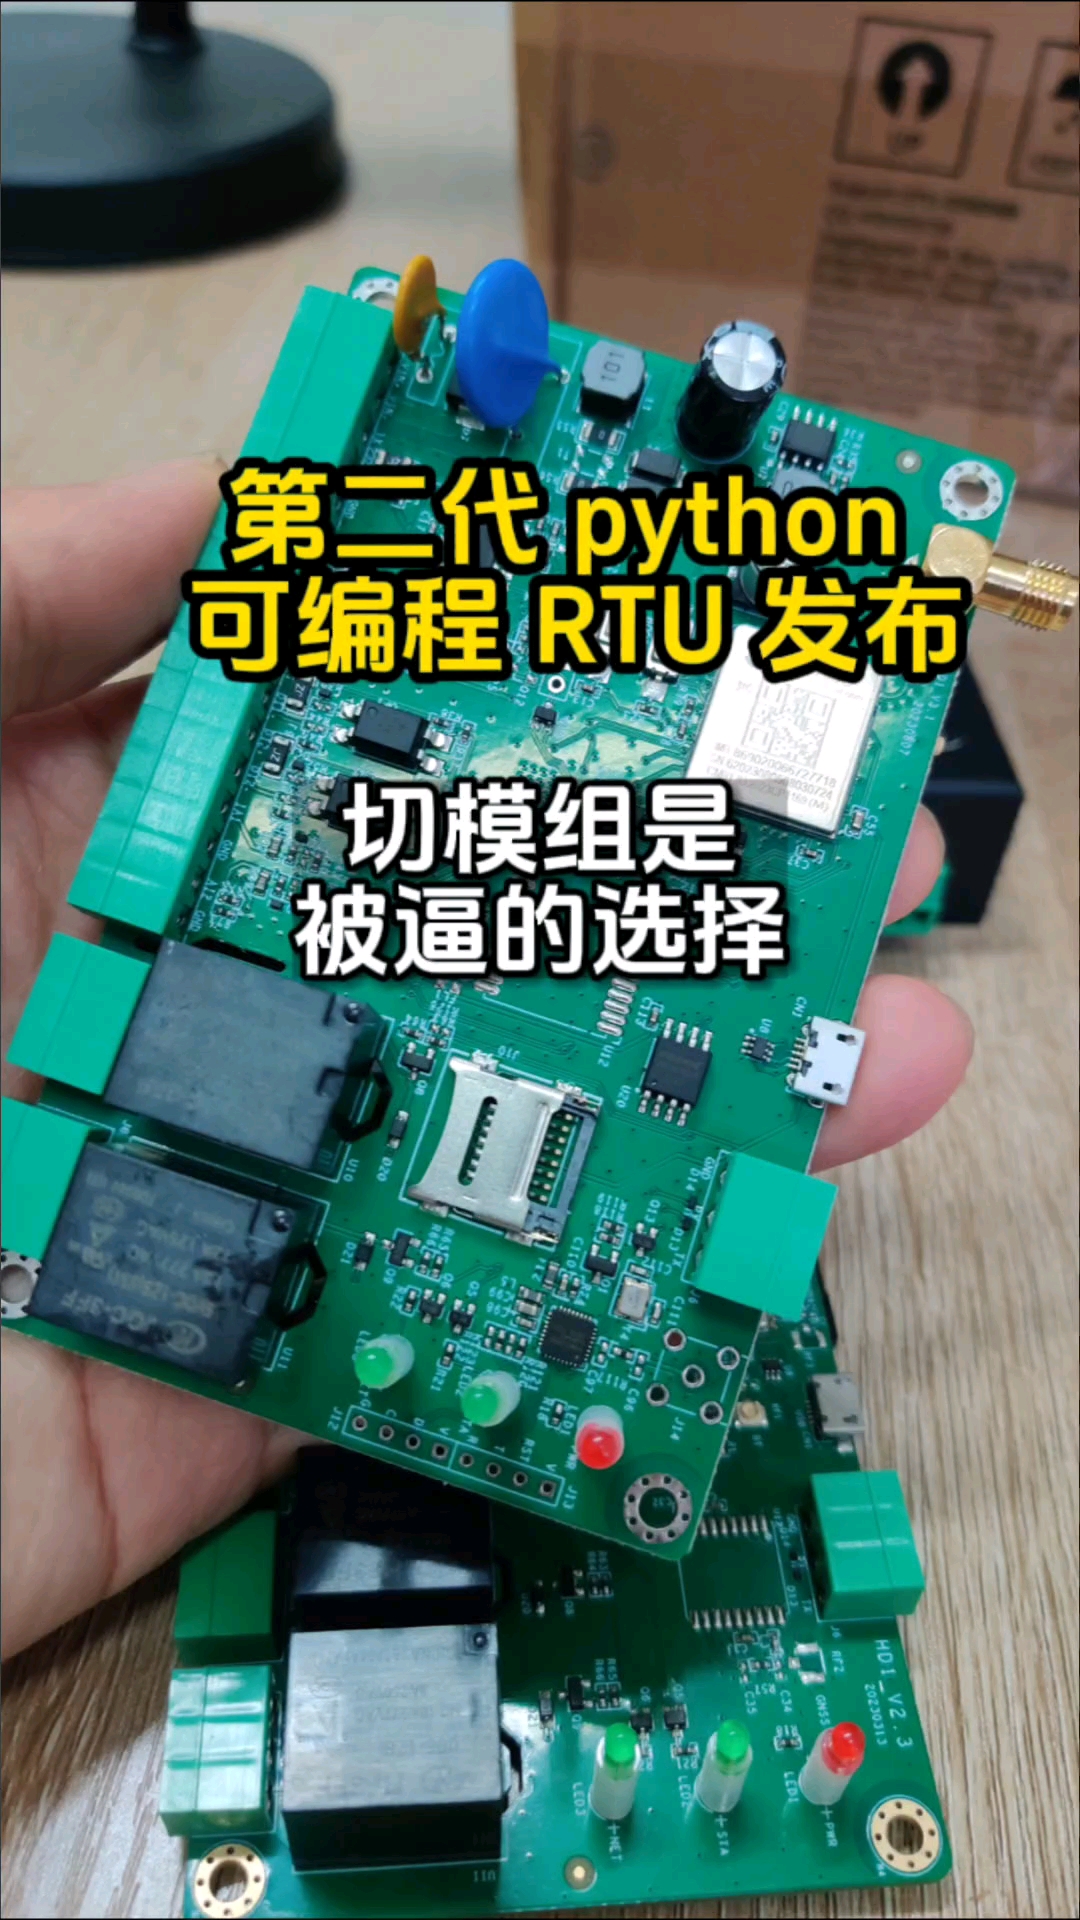 合宙模組的python可編程rtu發布了，滿足用戶的期待##單片機 #RTU #python編程 